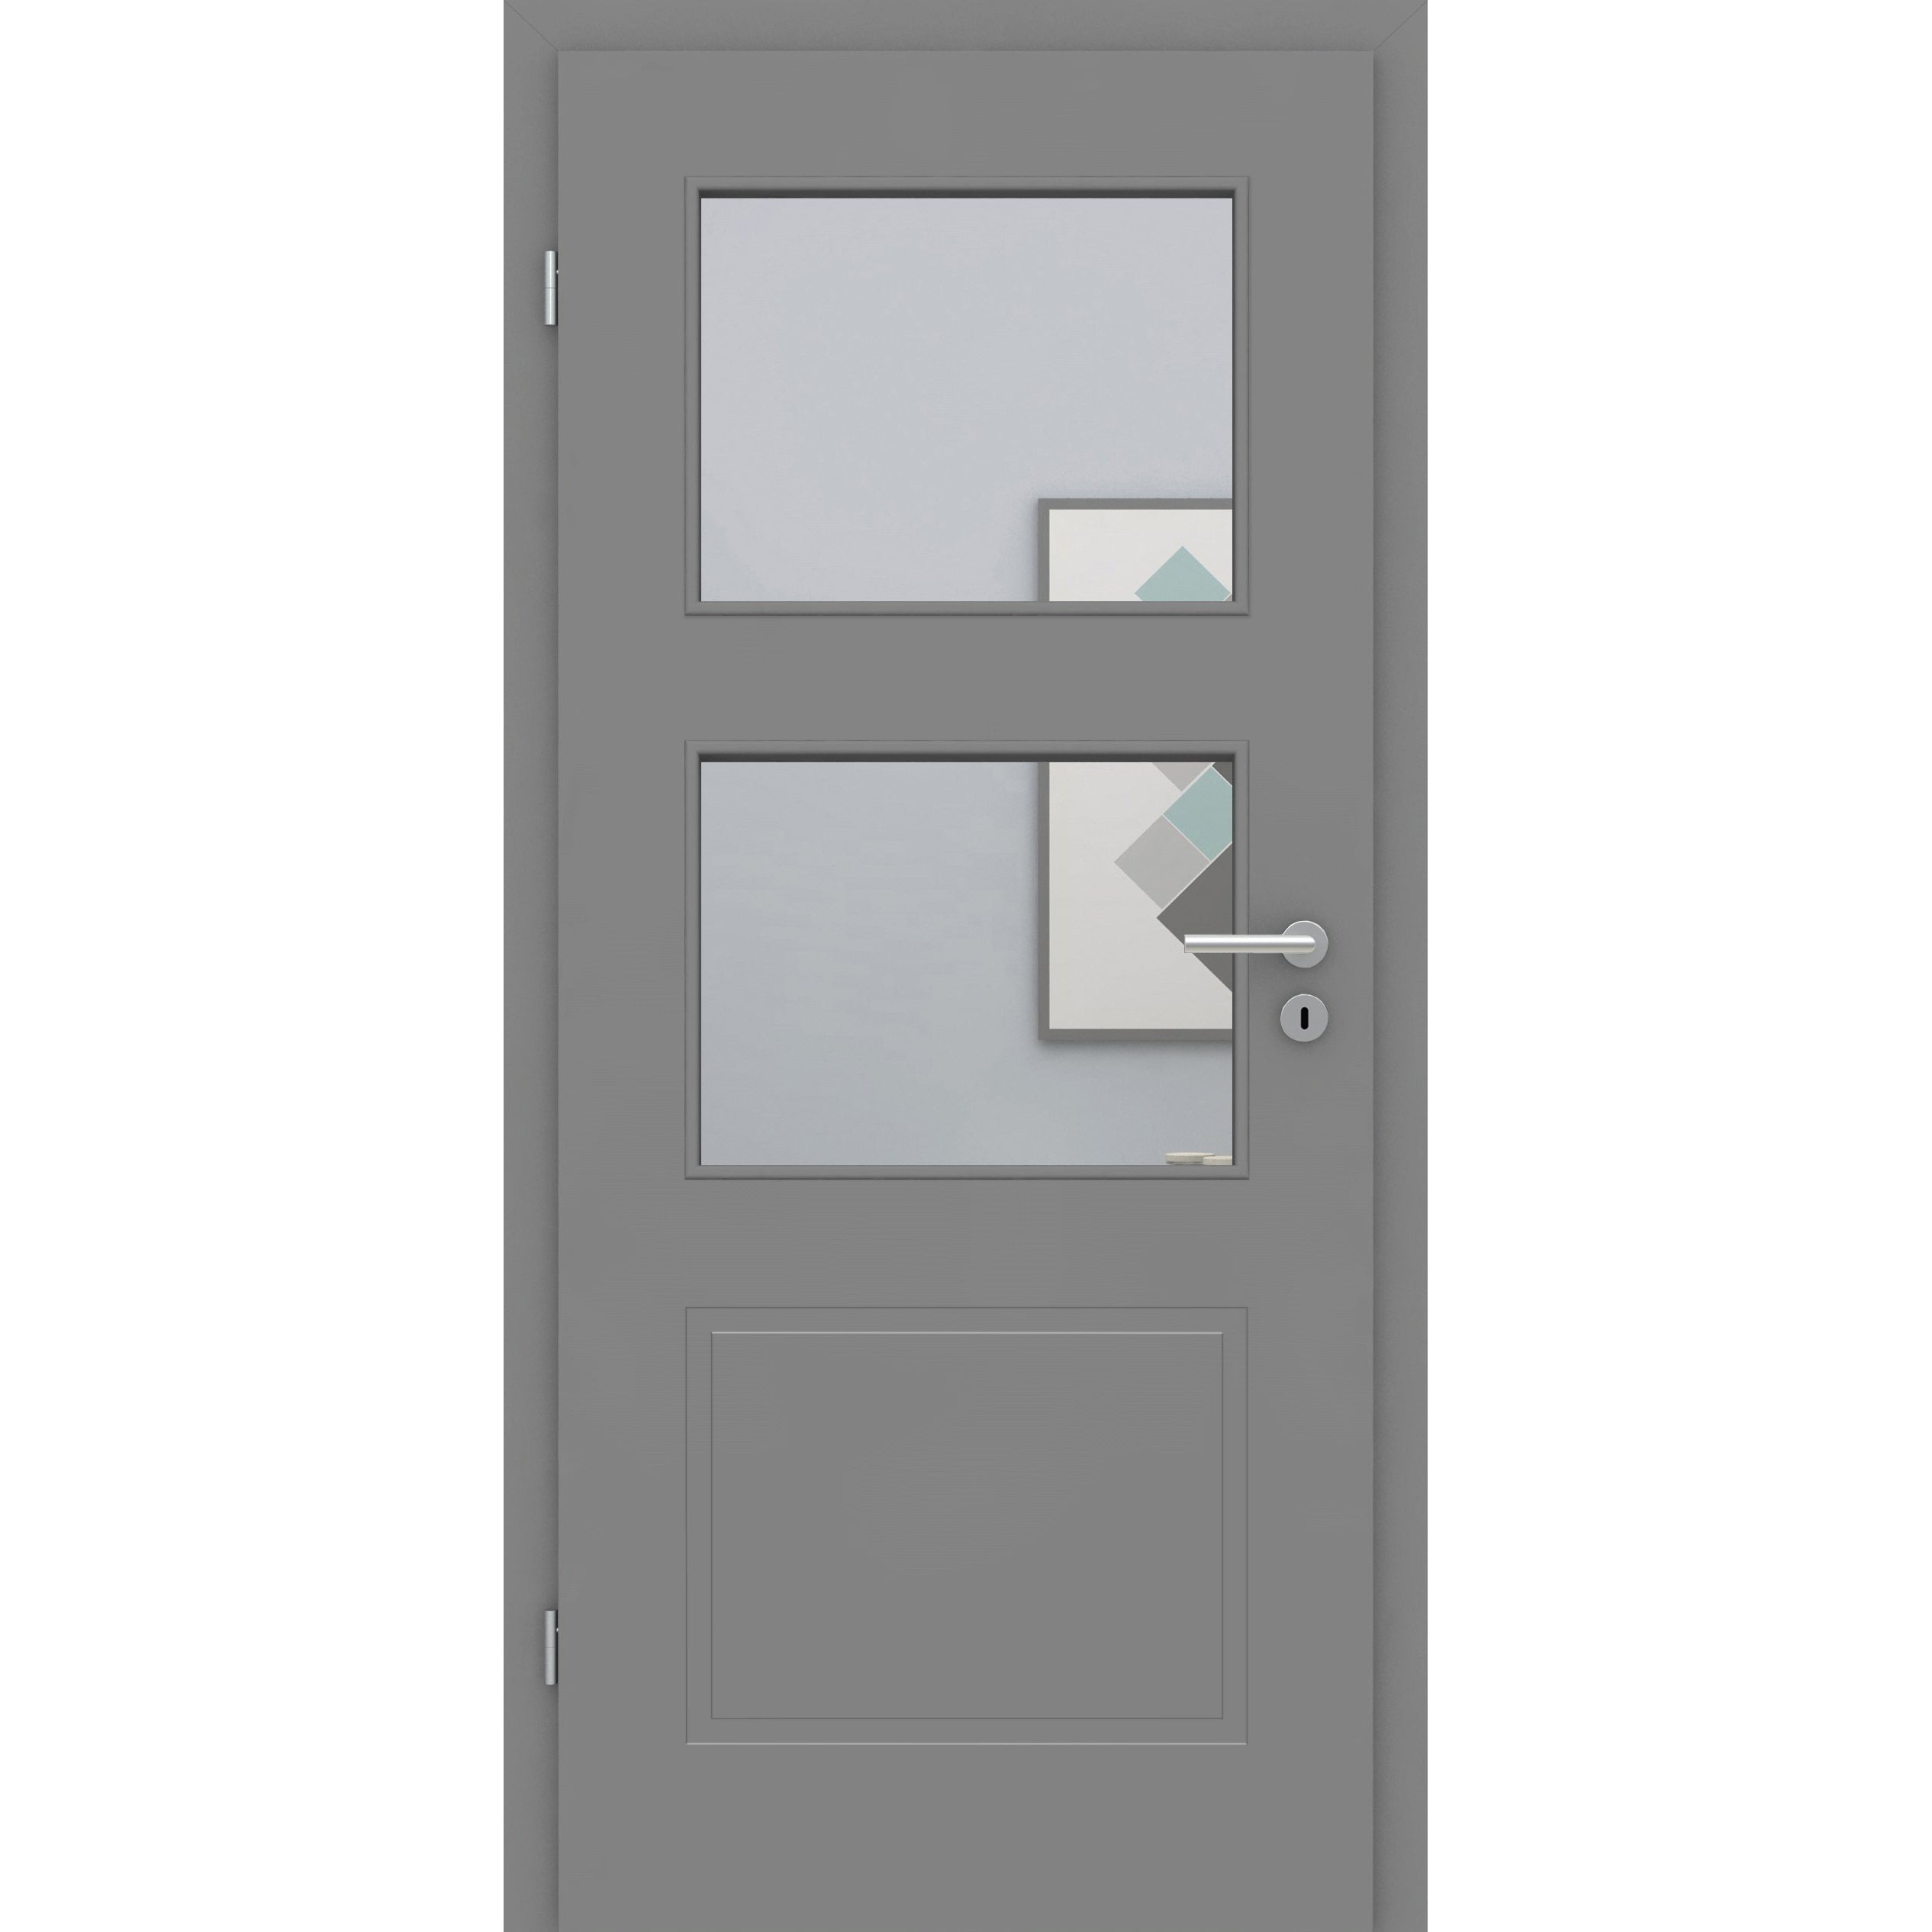 Zimmertür mit Lichtausschnitt grau 3 Kassetten Designkante - Modell Stiltür M37LA2